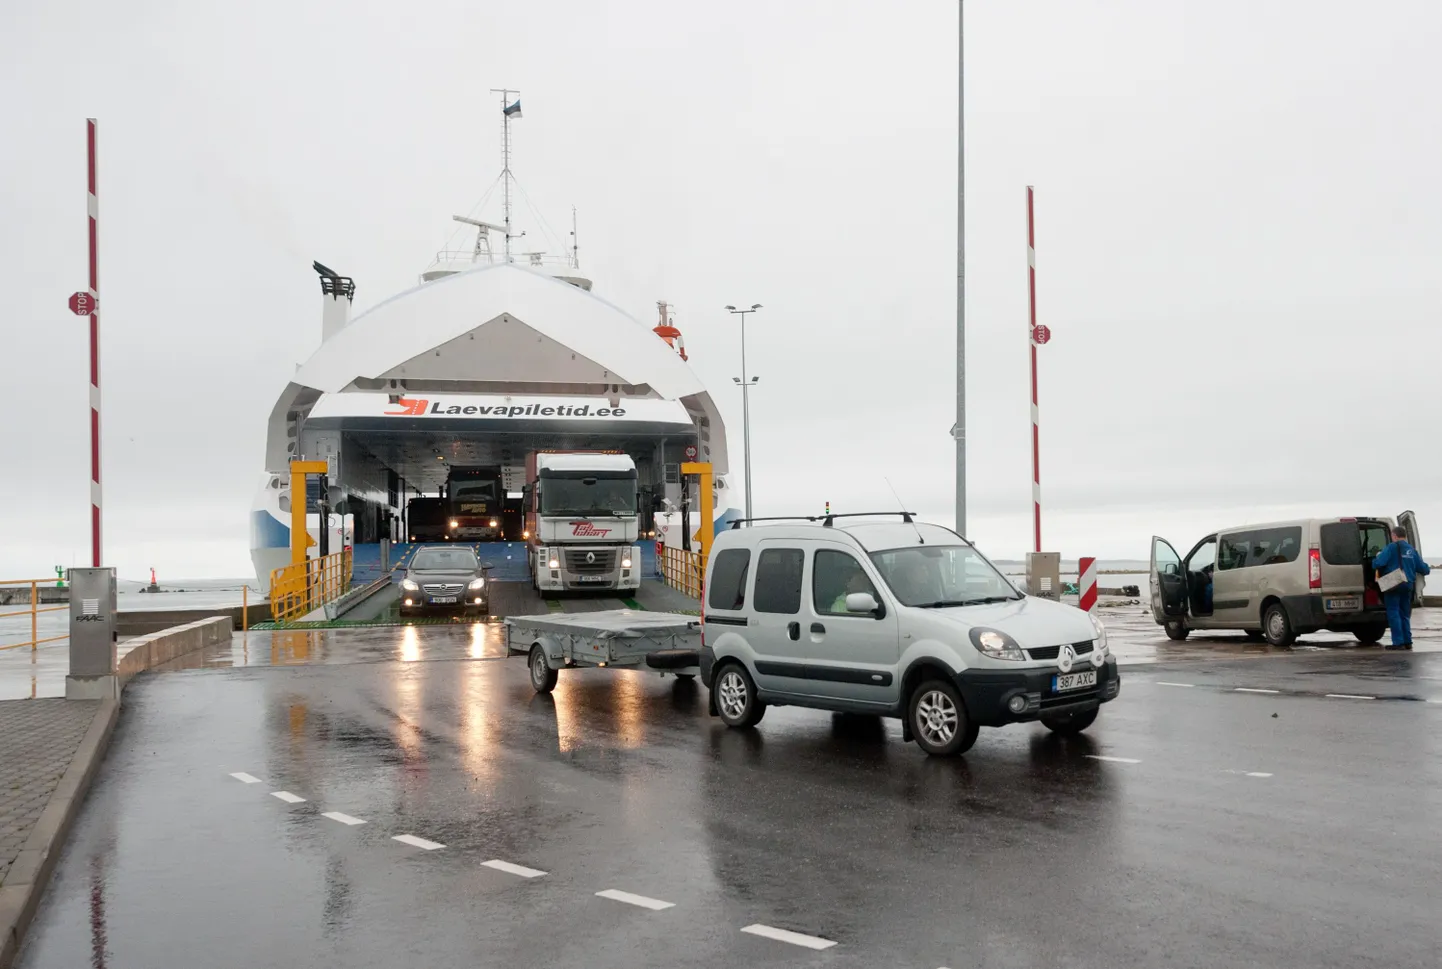 Parvlaev Hiiumaa Rohuküla sadamas.